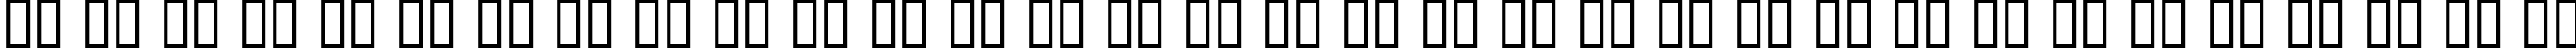 Пример написания русского алфавита шрифтом Mage